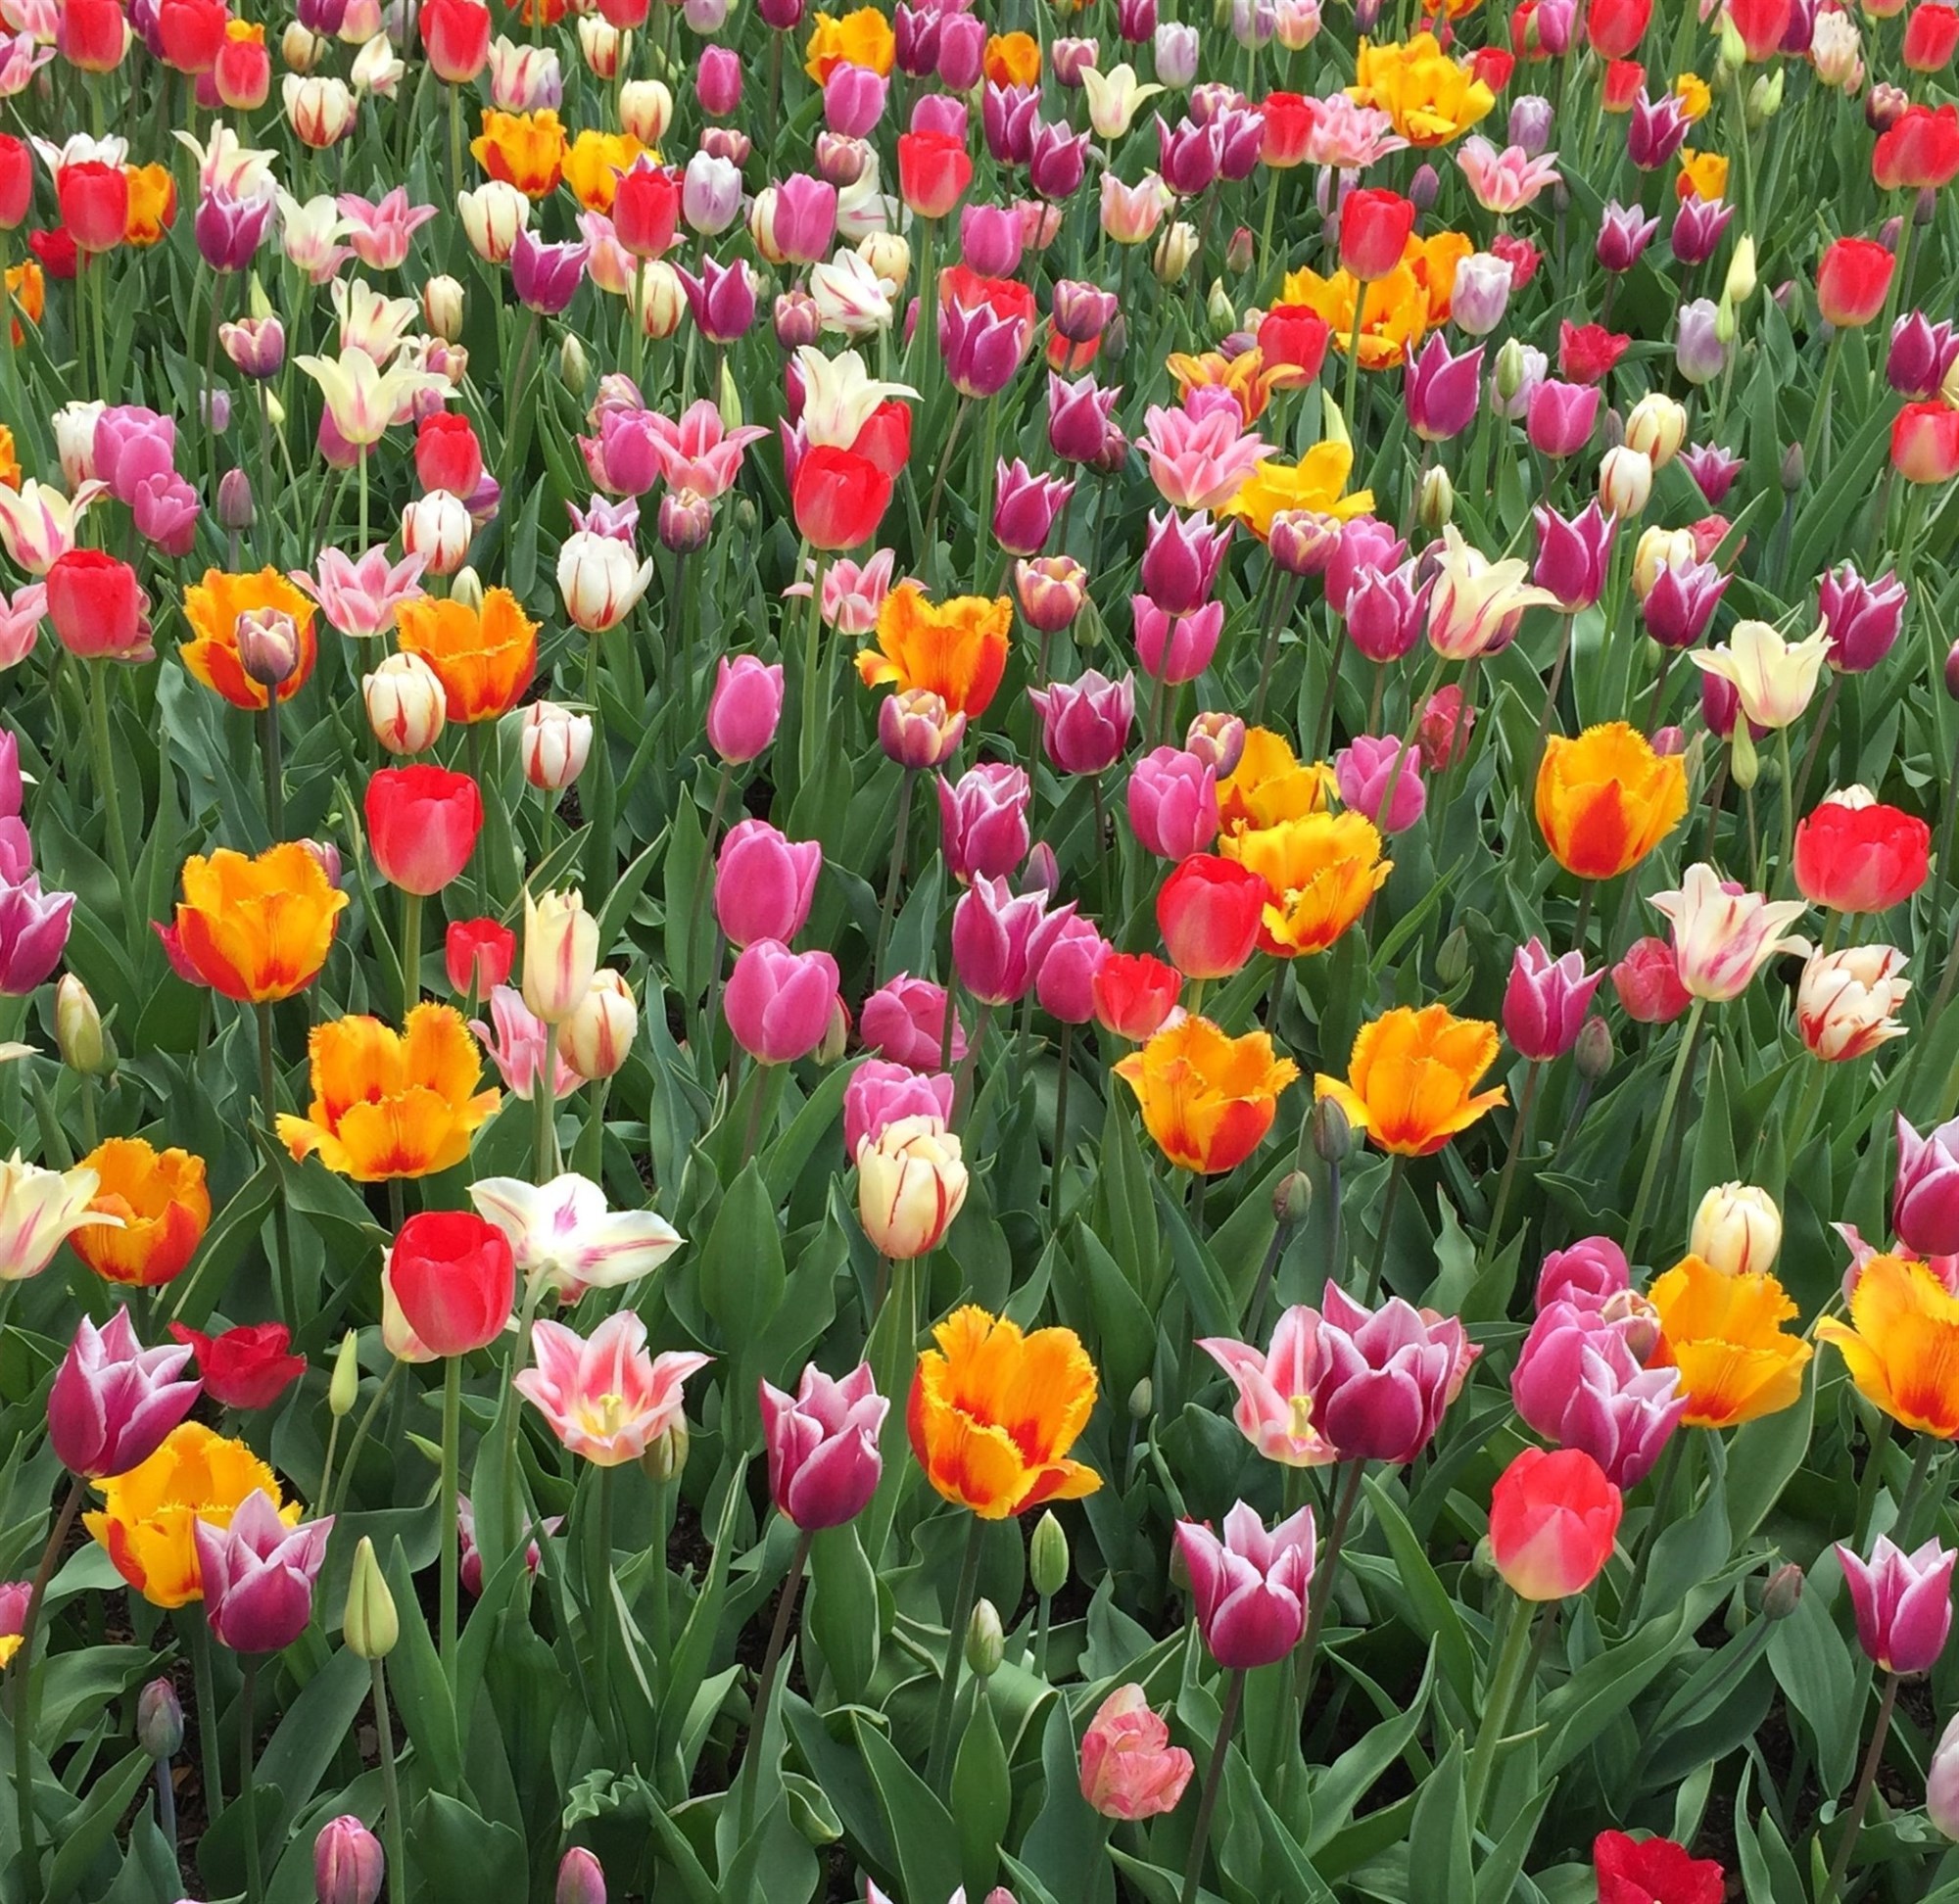 Spring in bloom in Jersey City, NJ